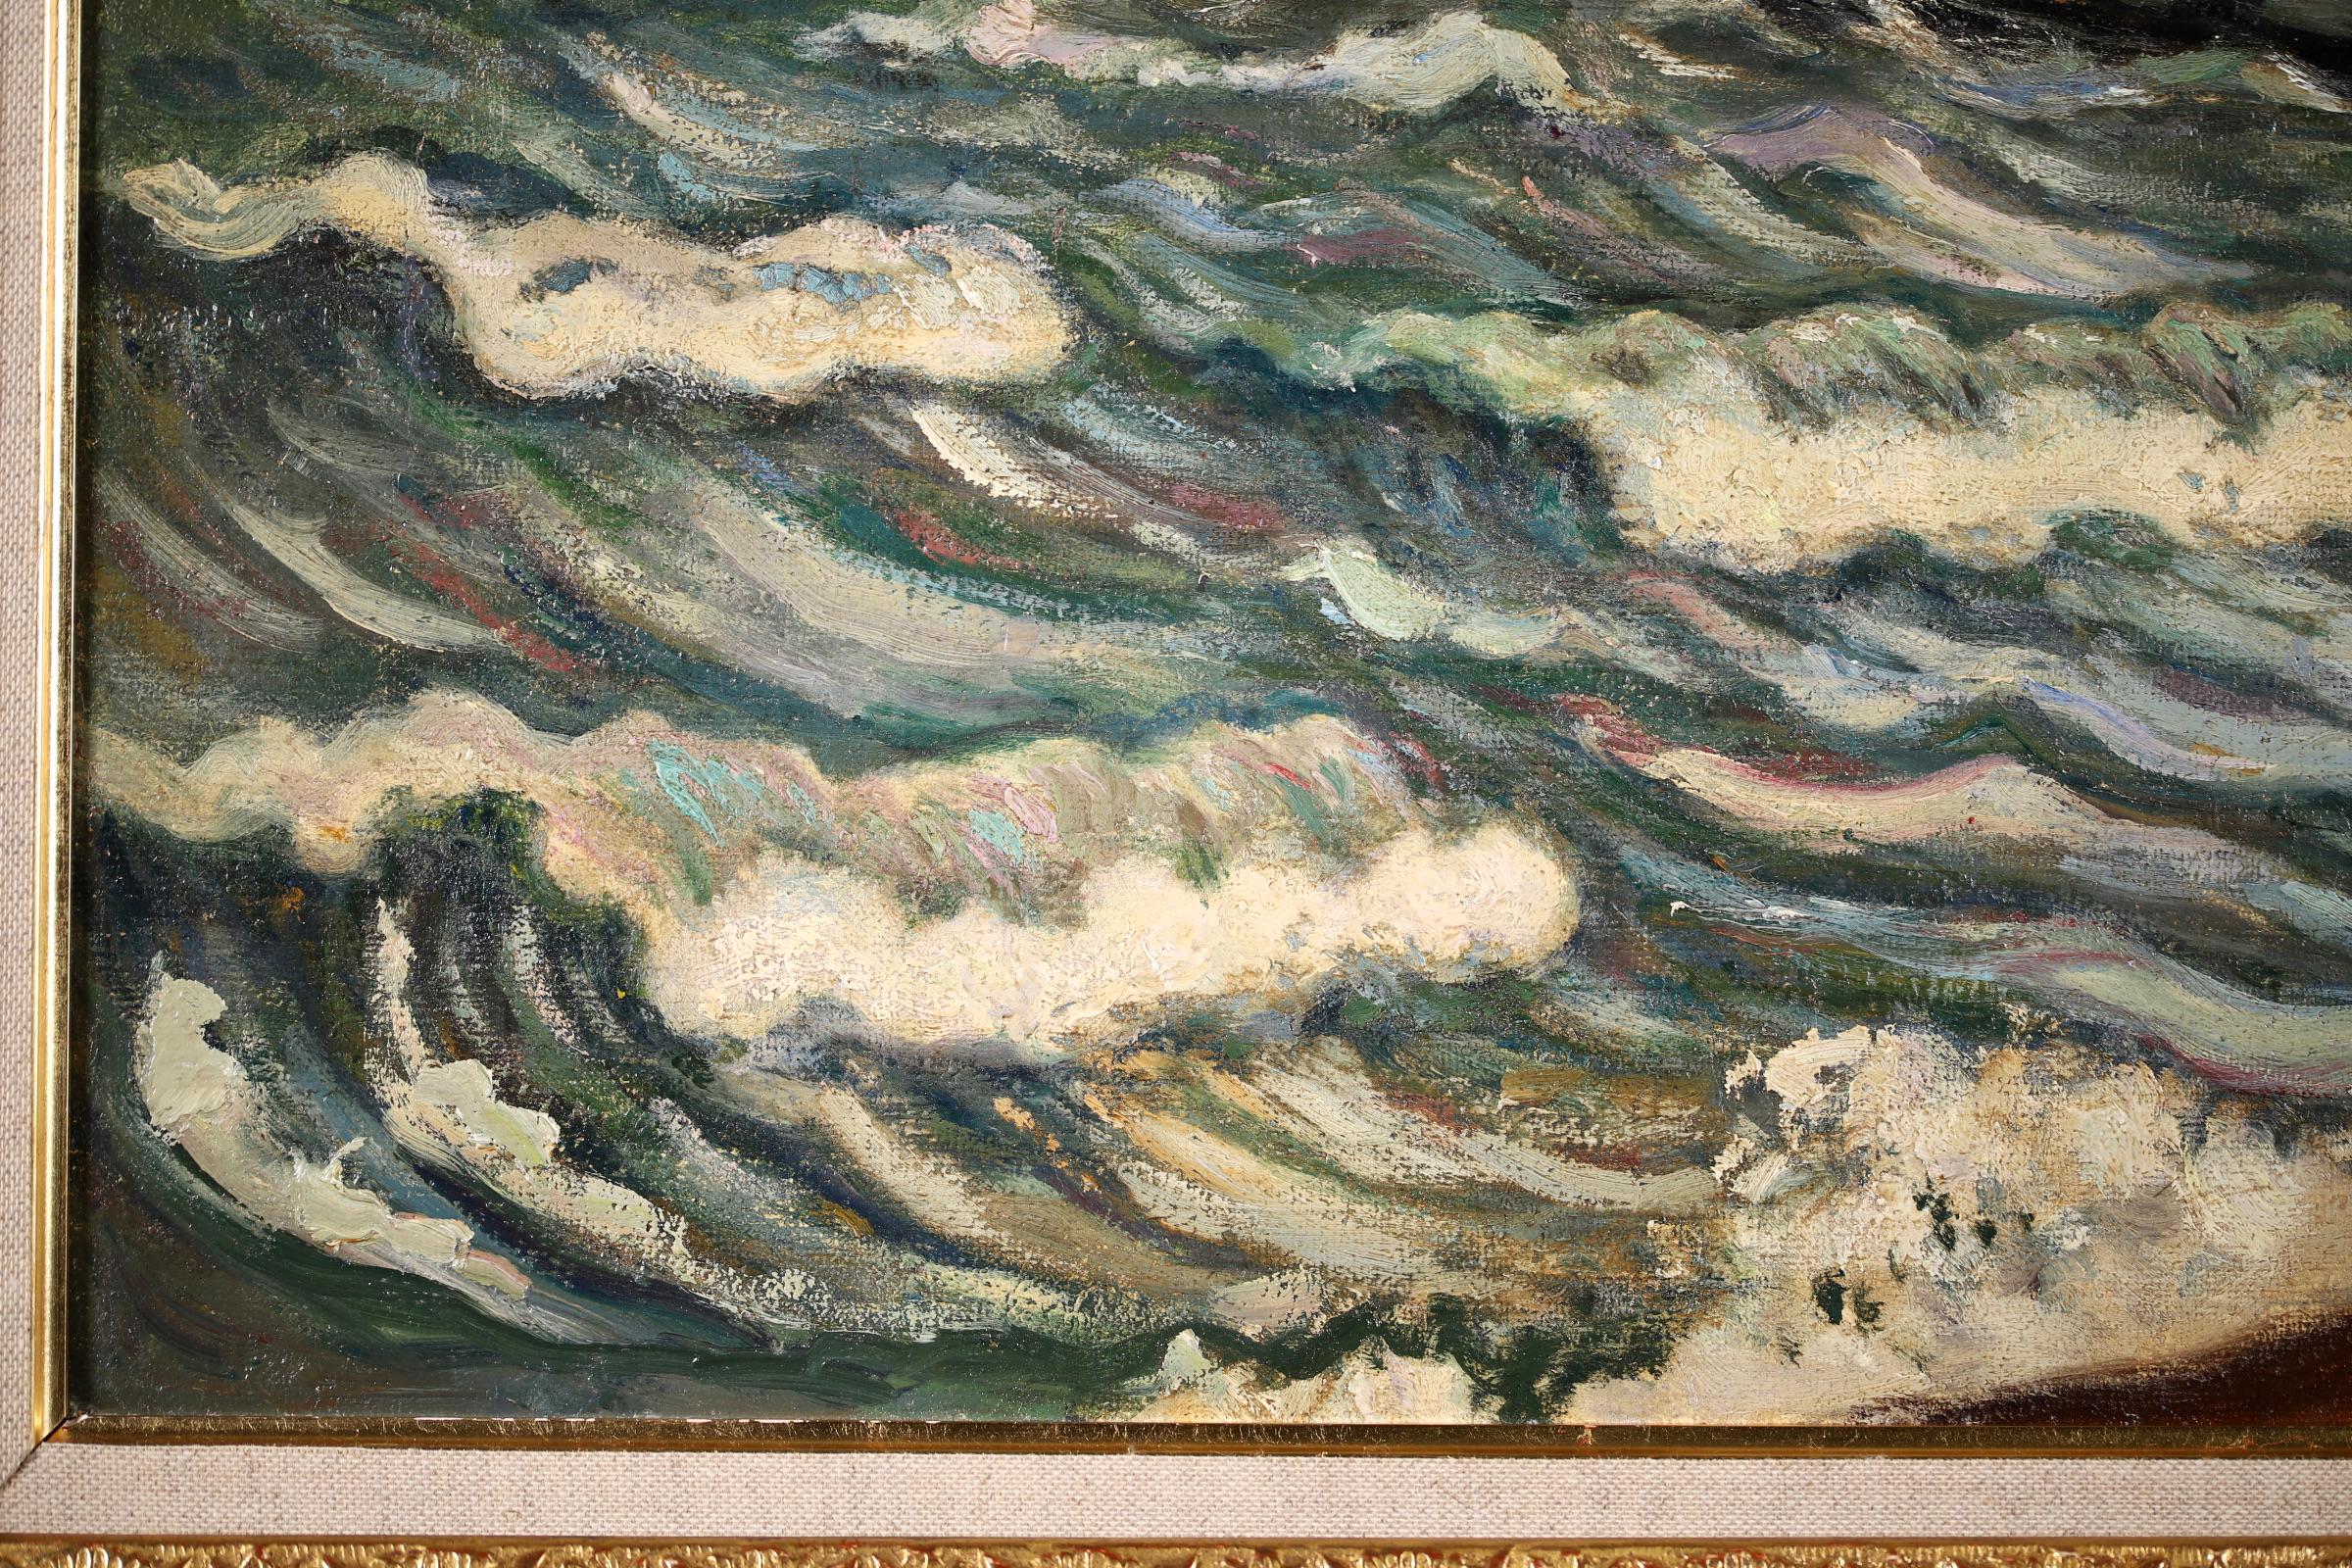 Stormy Weather - Honfleur - Post Impressionist Oil, Seascape by H de Saint-Delis - Post-Impressionist Painting by Henri Liénard de Saint-Délis